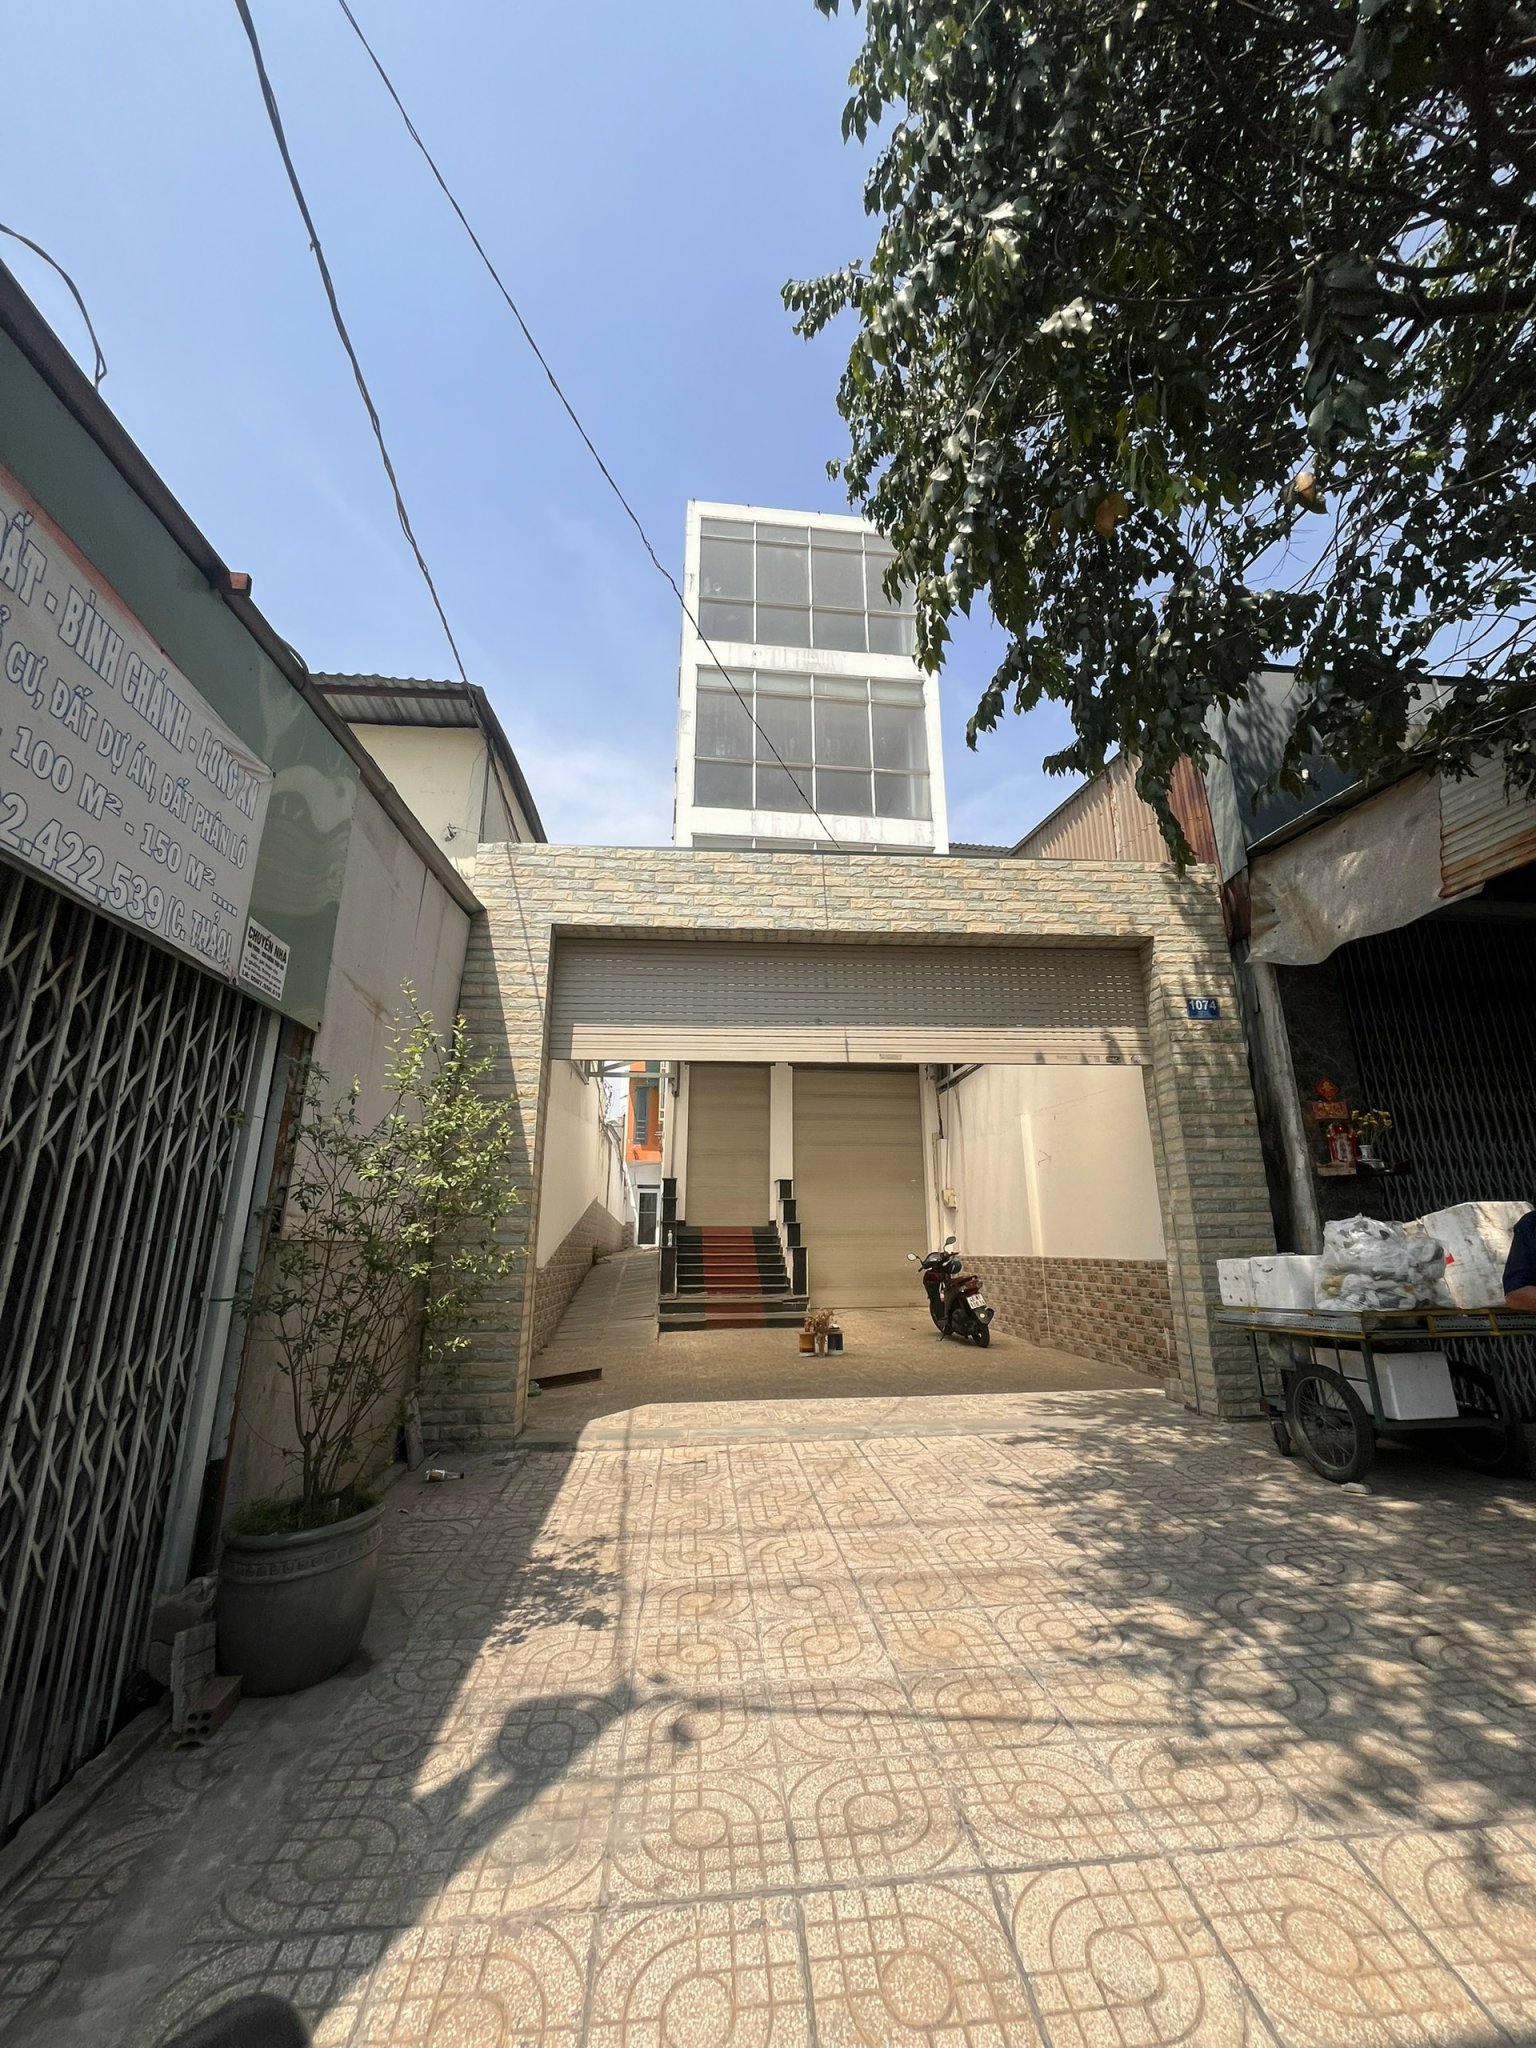 Nhà bán hoặc cho thuê nhà 1 trệt 3 lầu, mặt tiền kinh doanh tại Quốc lộ 50, Xã Phong Phú, Huyện Bình Chánh, Tp Hồ Chí Minh